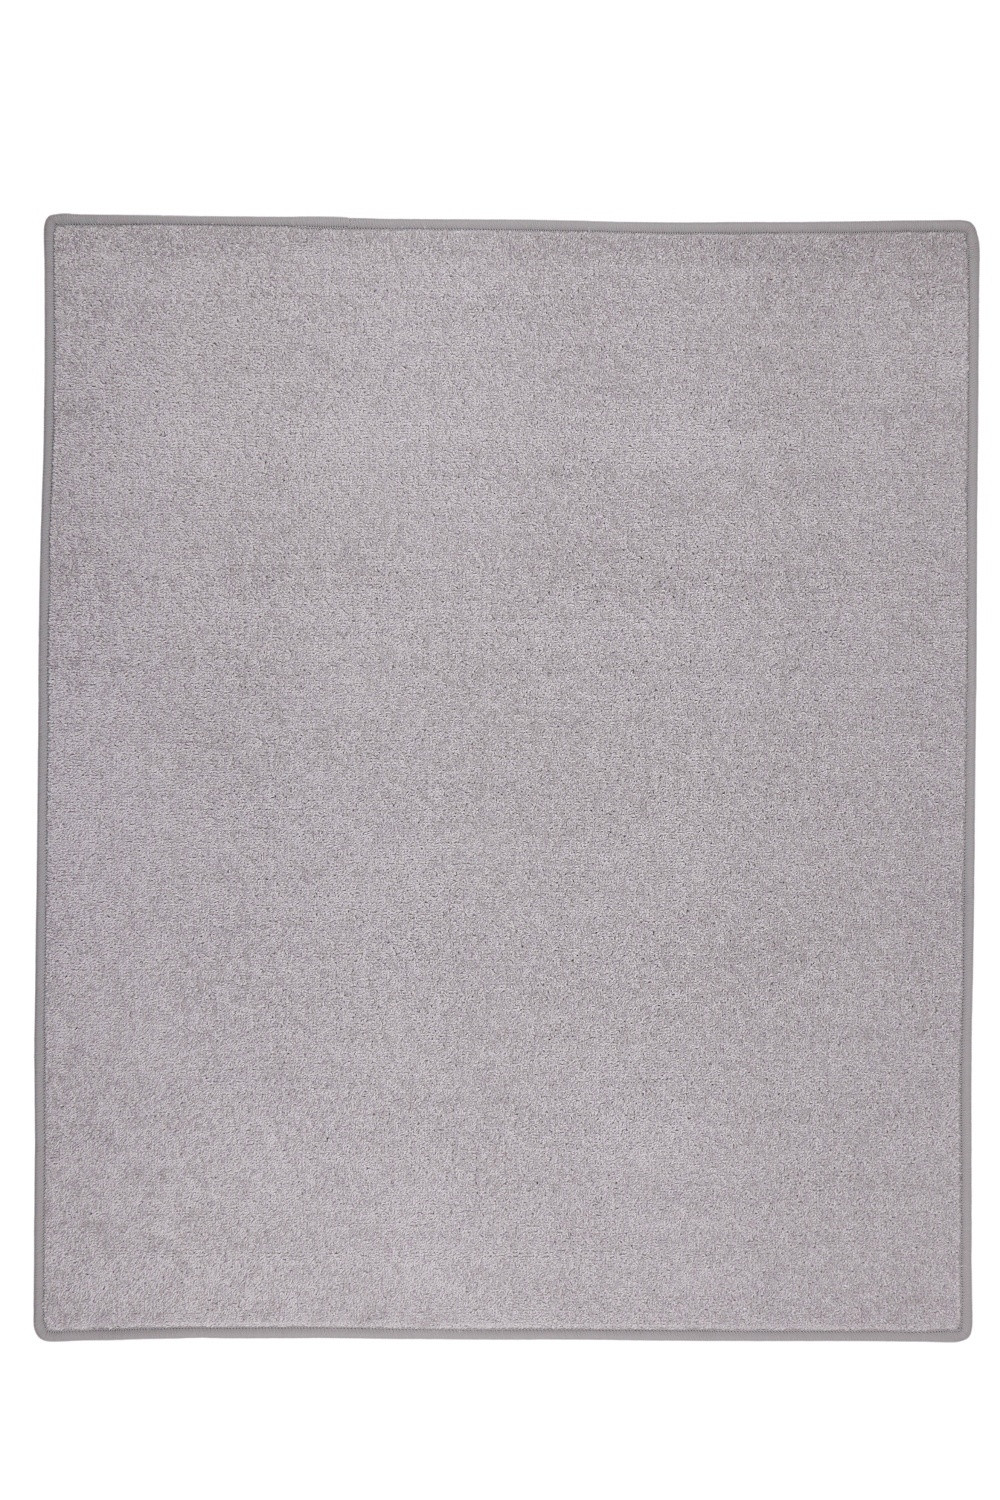 Kusový koberec Eton sivý 73 - 280x370 cm Vopi koberce 